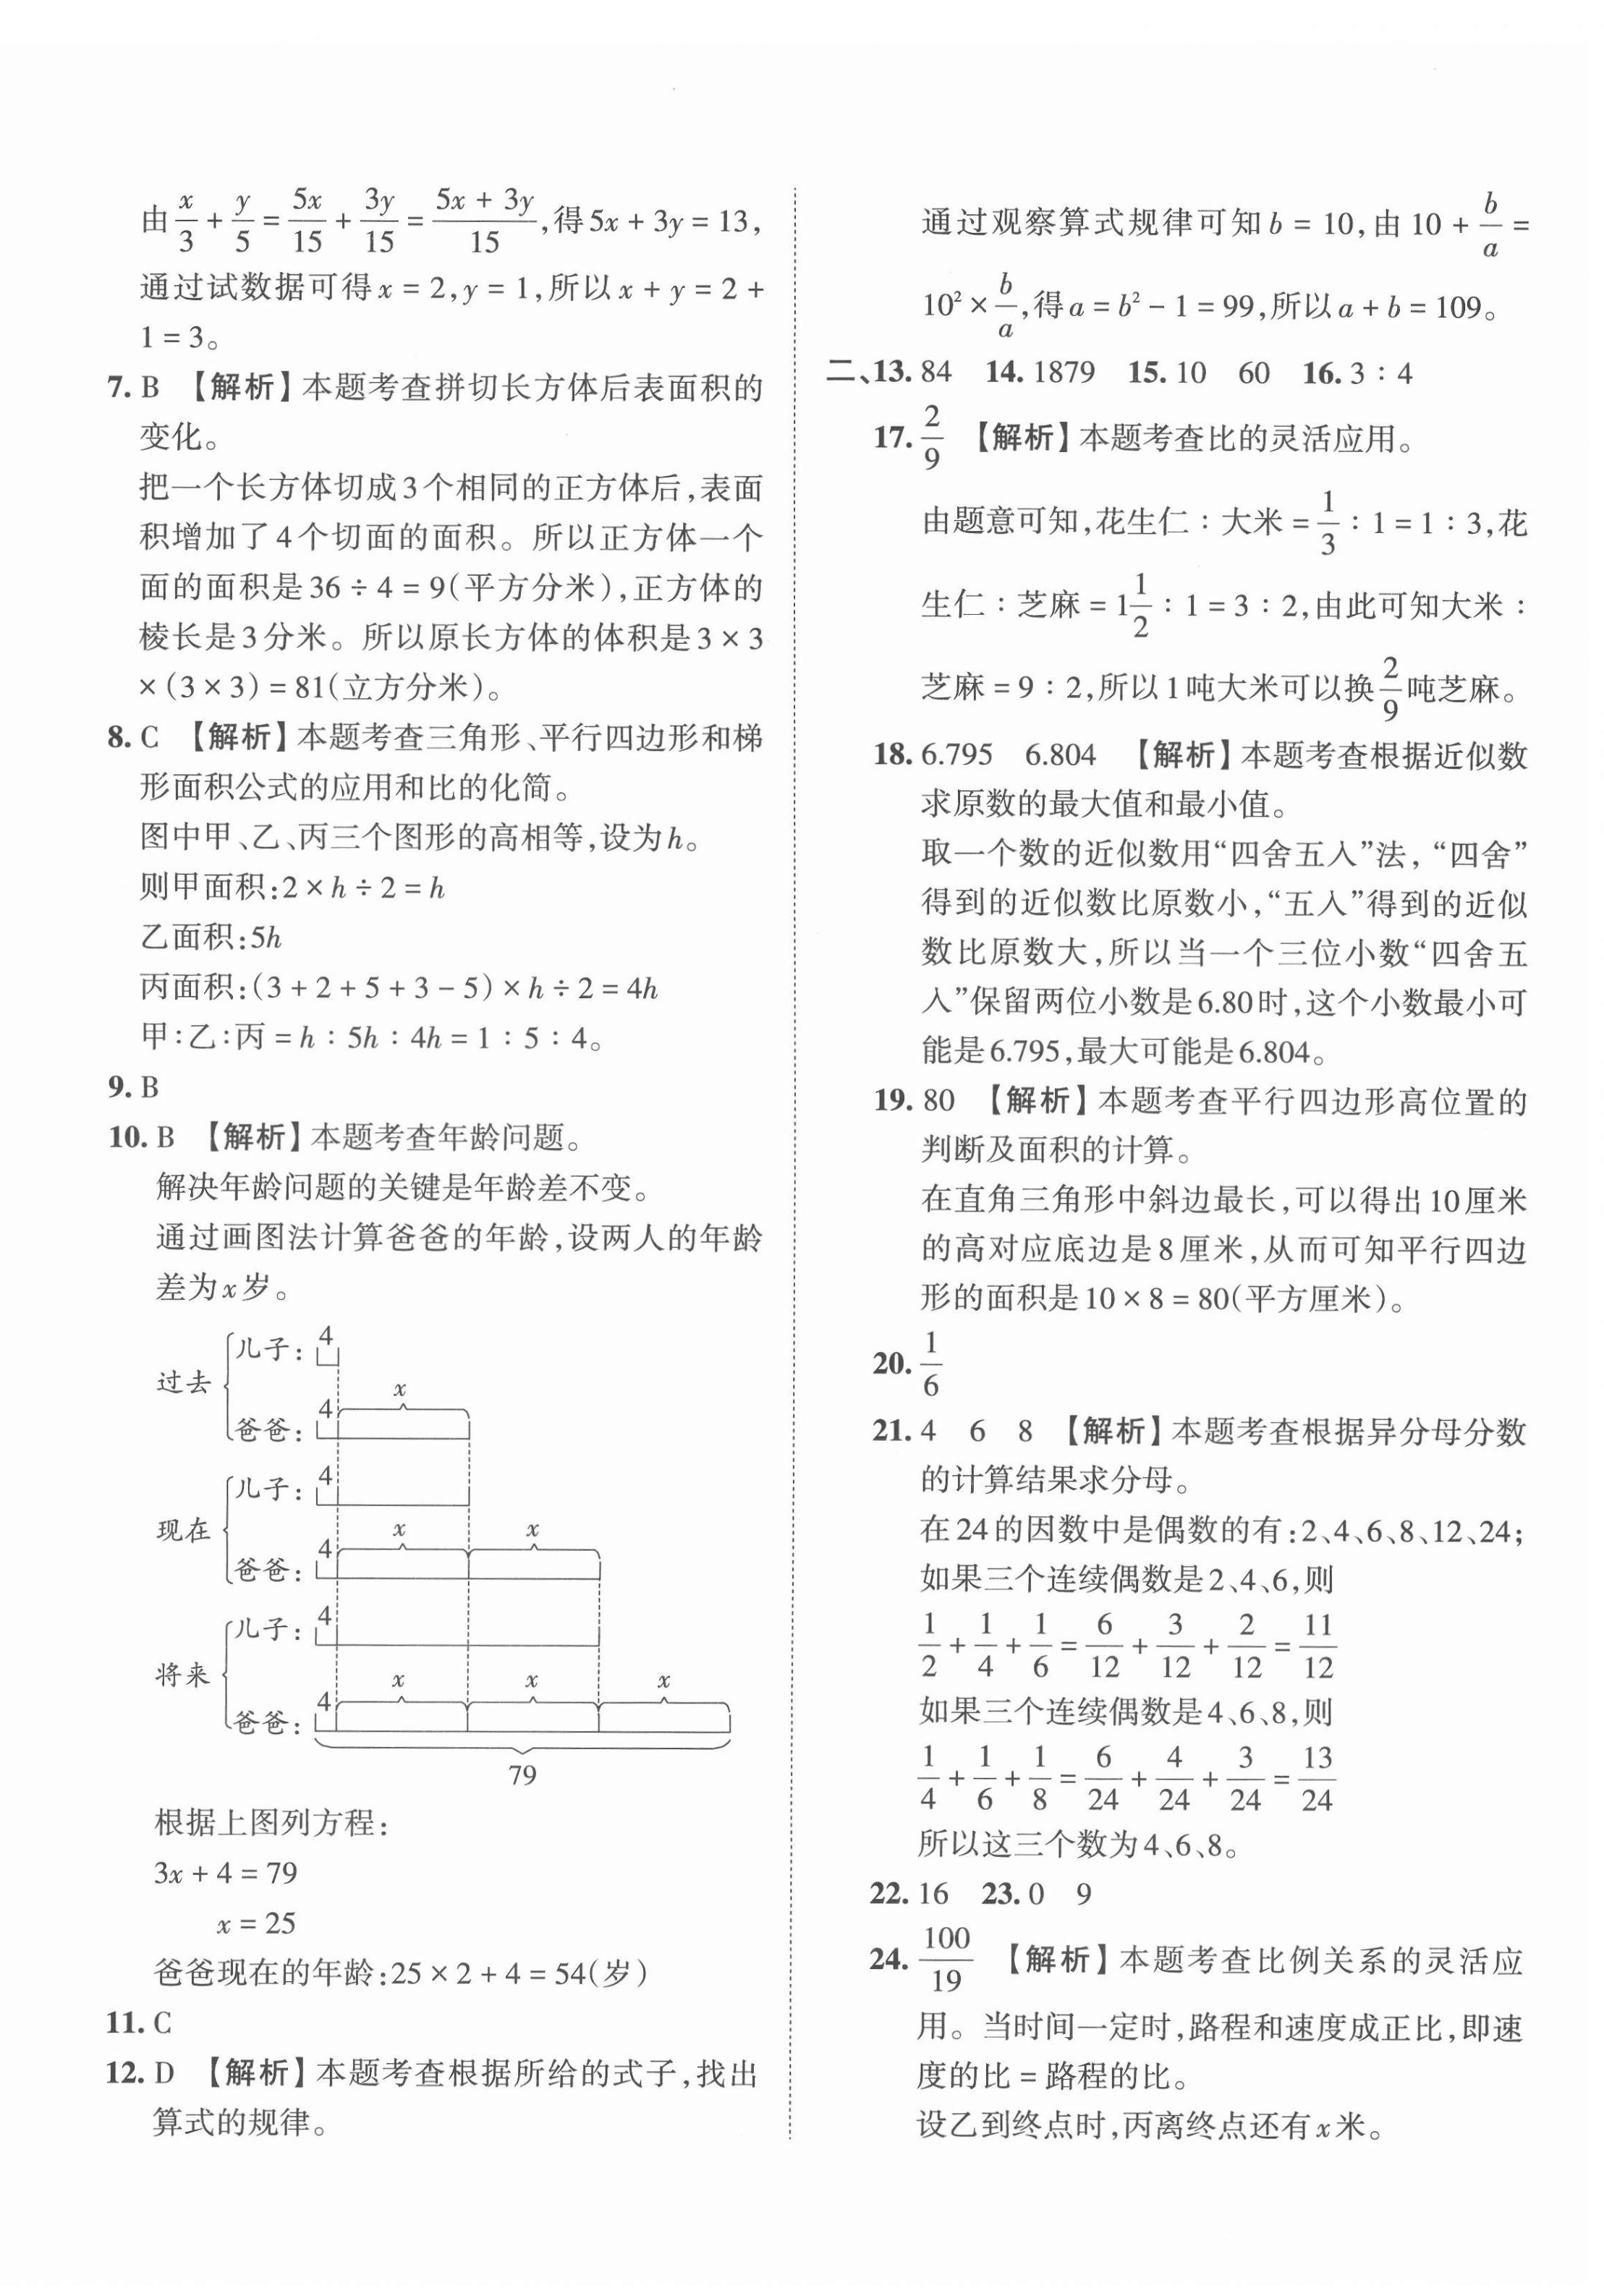 2022年王朝霞小升初重点校毕业升学及招生分班数学 第8页